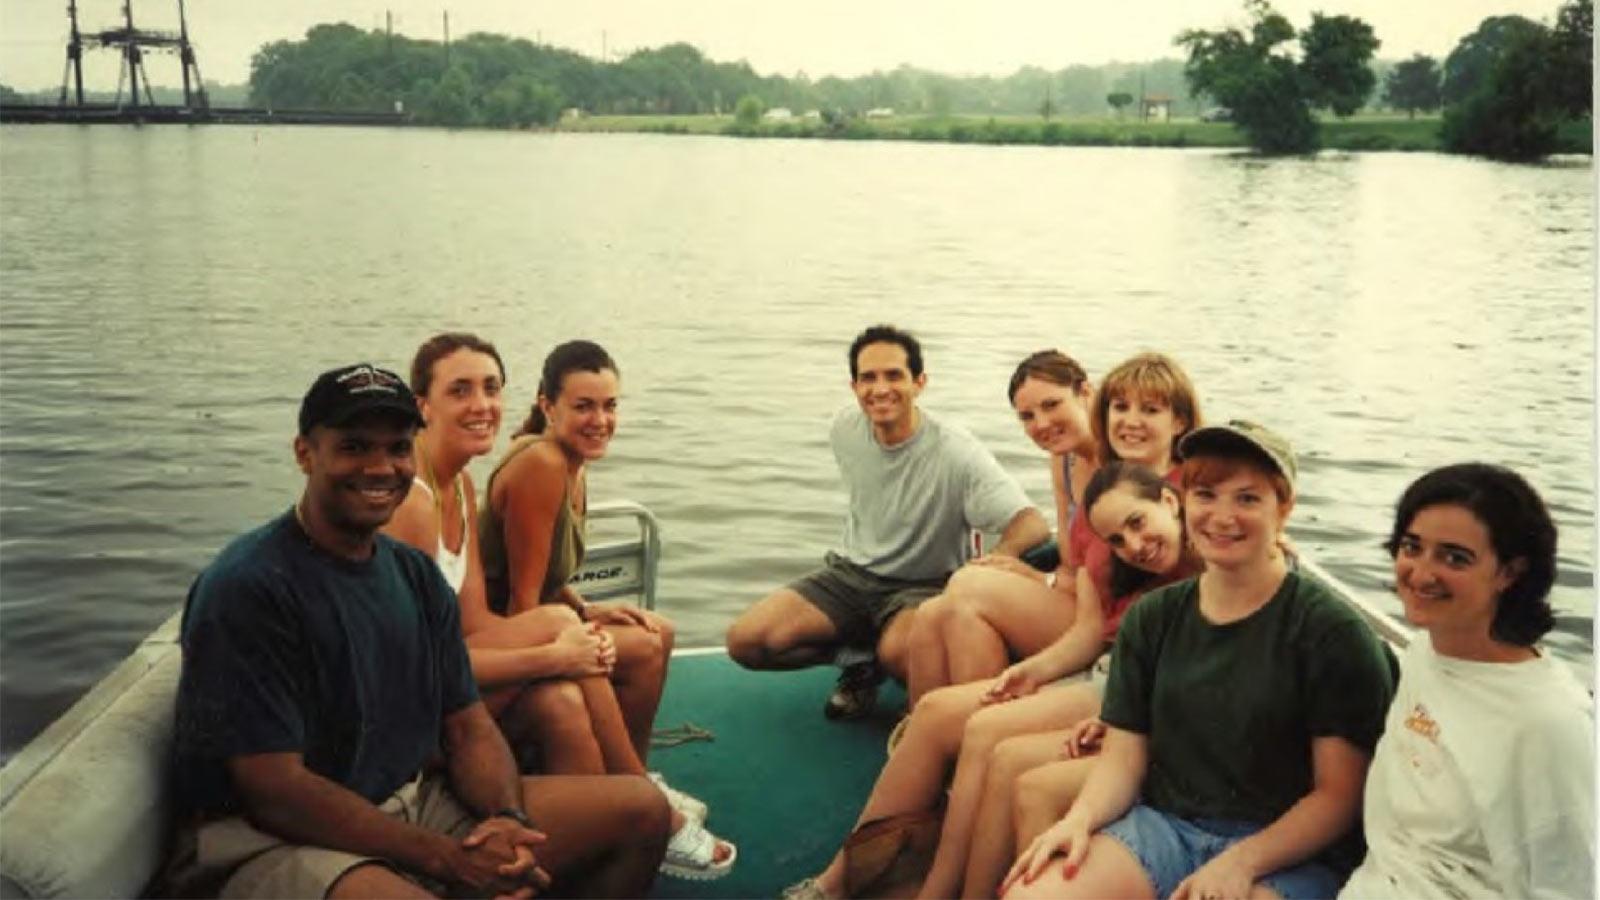 Elisabeth Haub School of Law DC Externship Students on a Boat in 1999